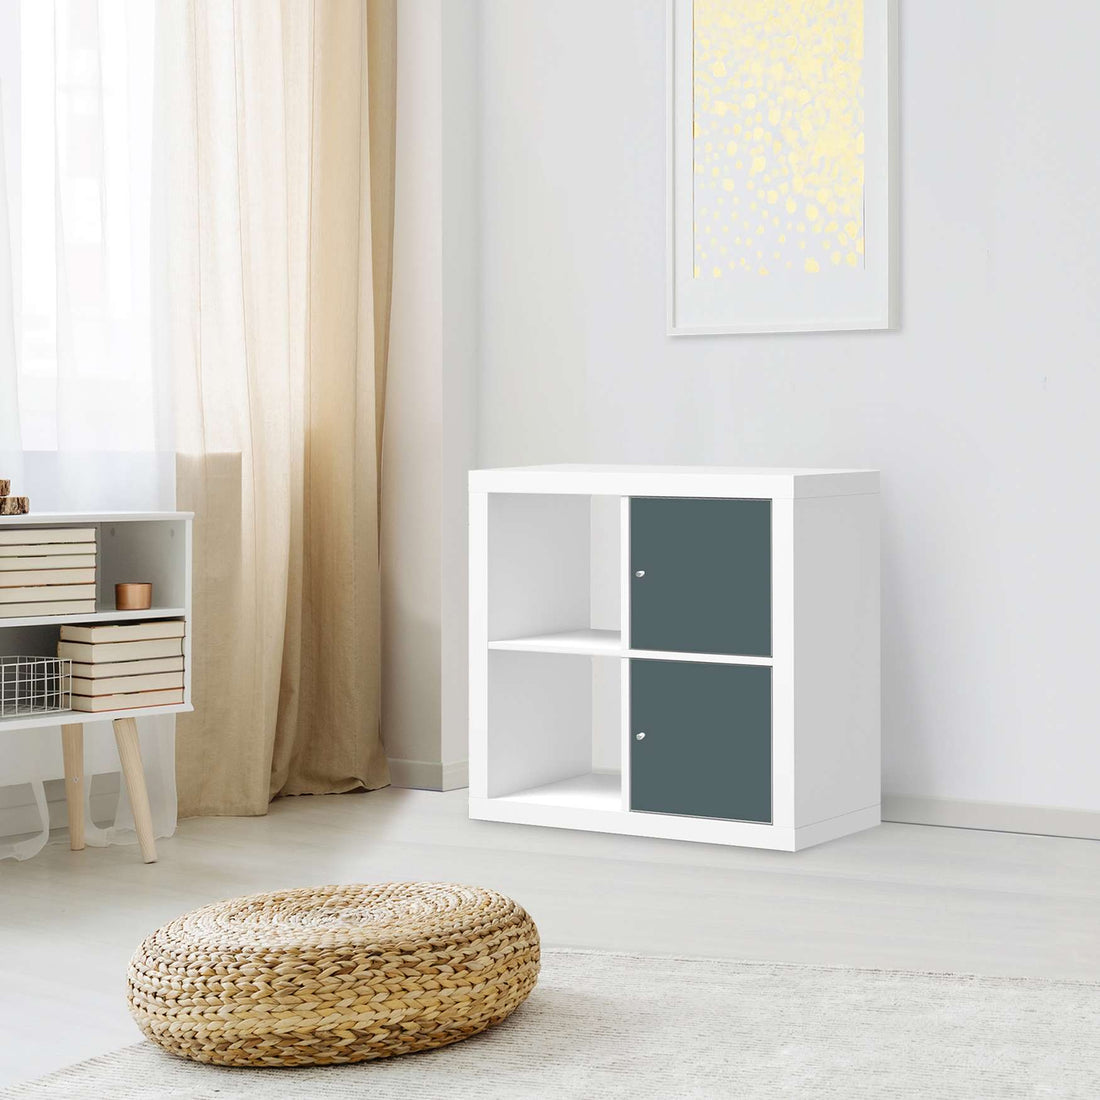 Klebefolie für Möbel Blaugrau Light - IKEA Expedit Regal 2 Türen Hoch - Wohnzimmer